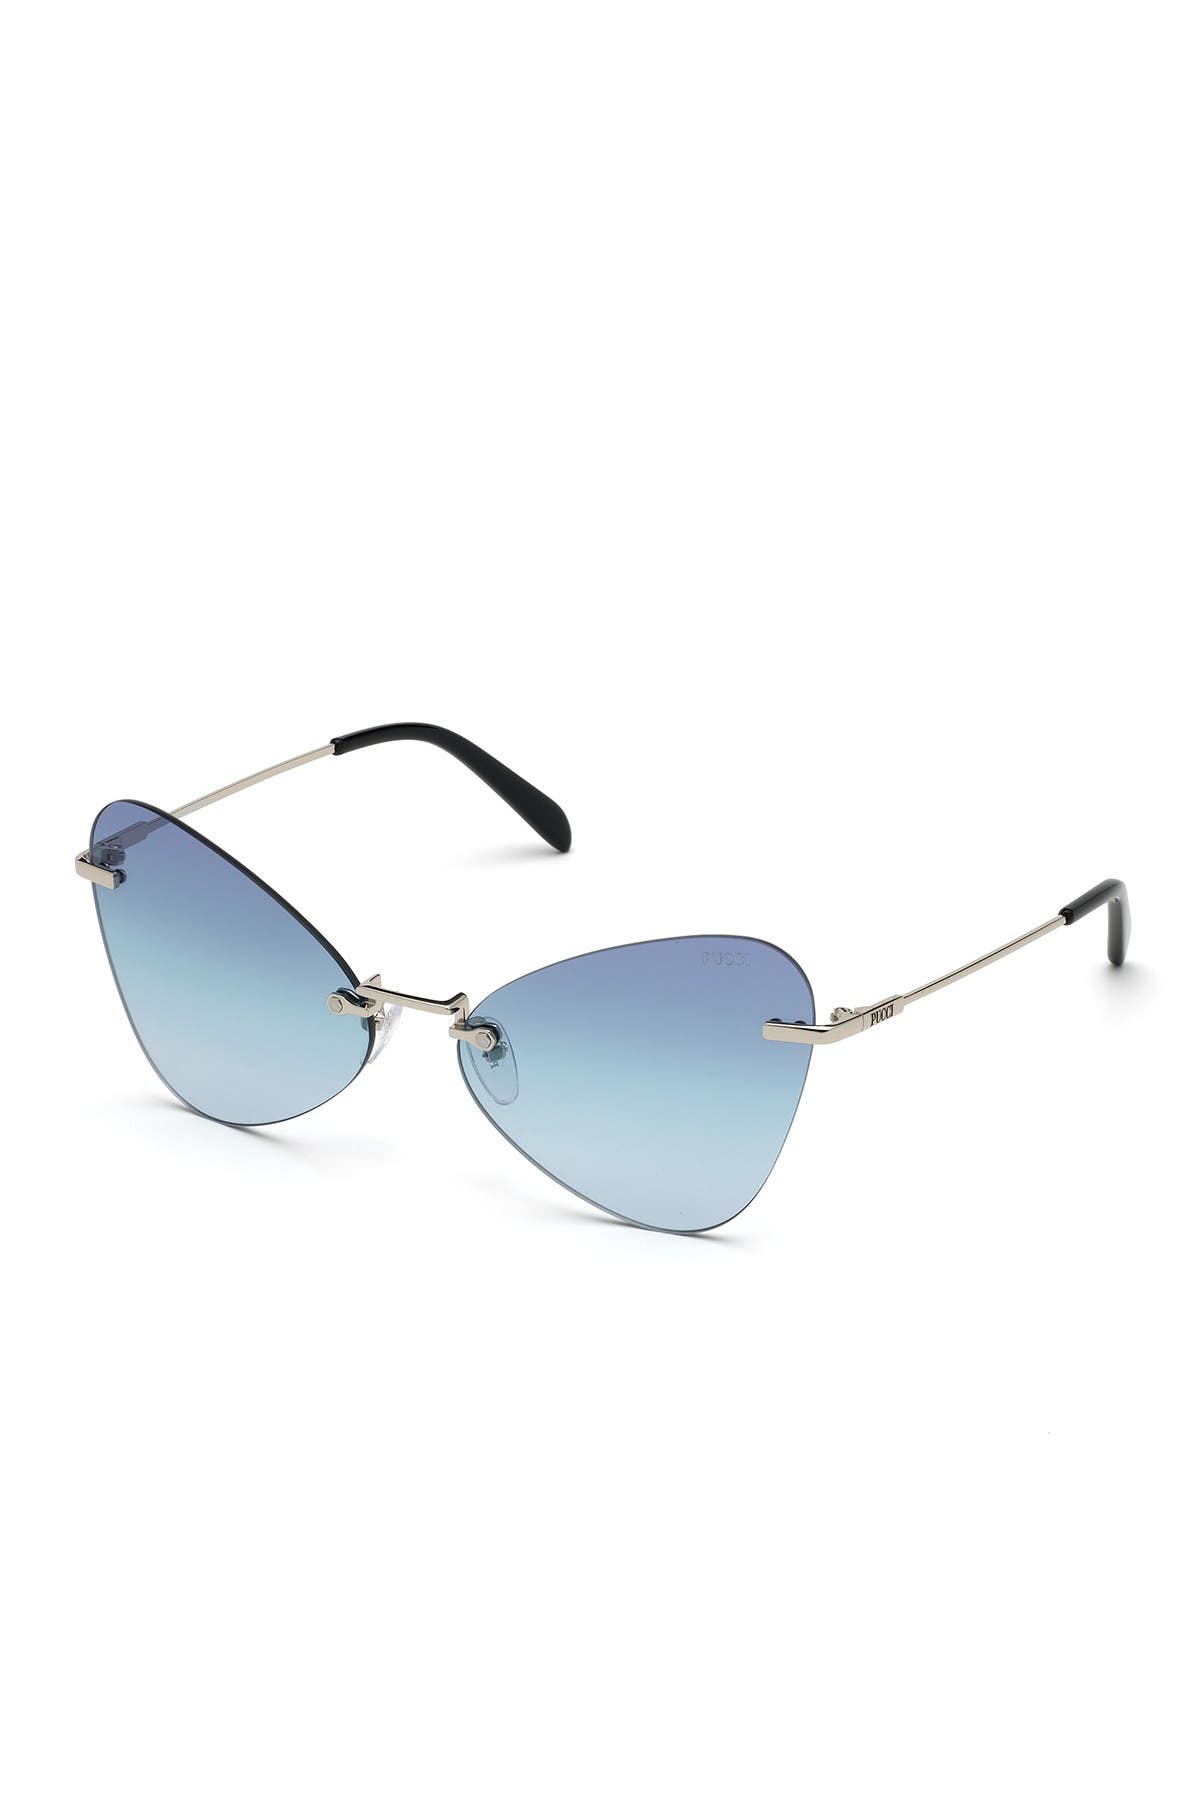 Emilio Pucci 62mm Butterfly Frameless Sunglasses In Sgun/viol